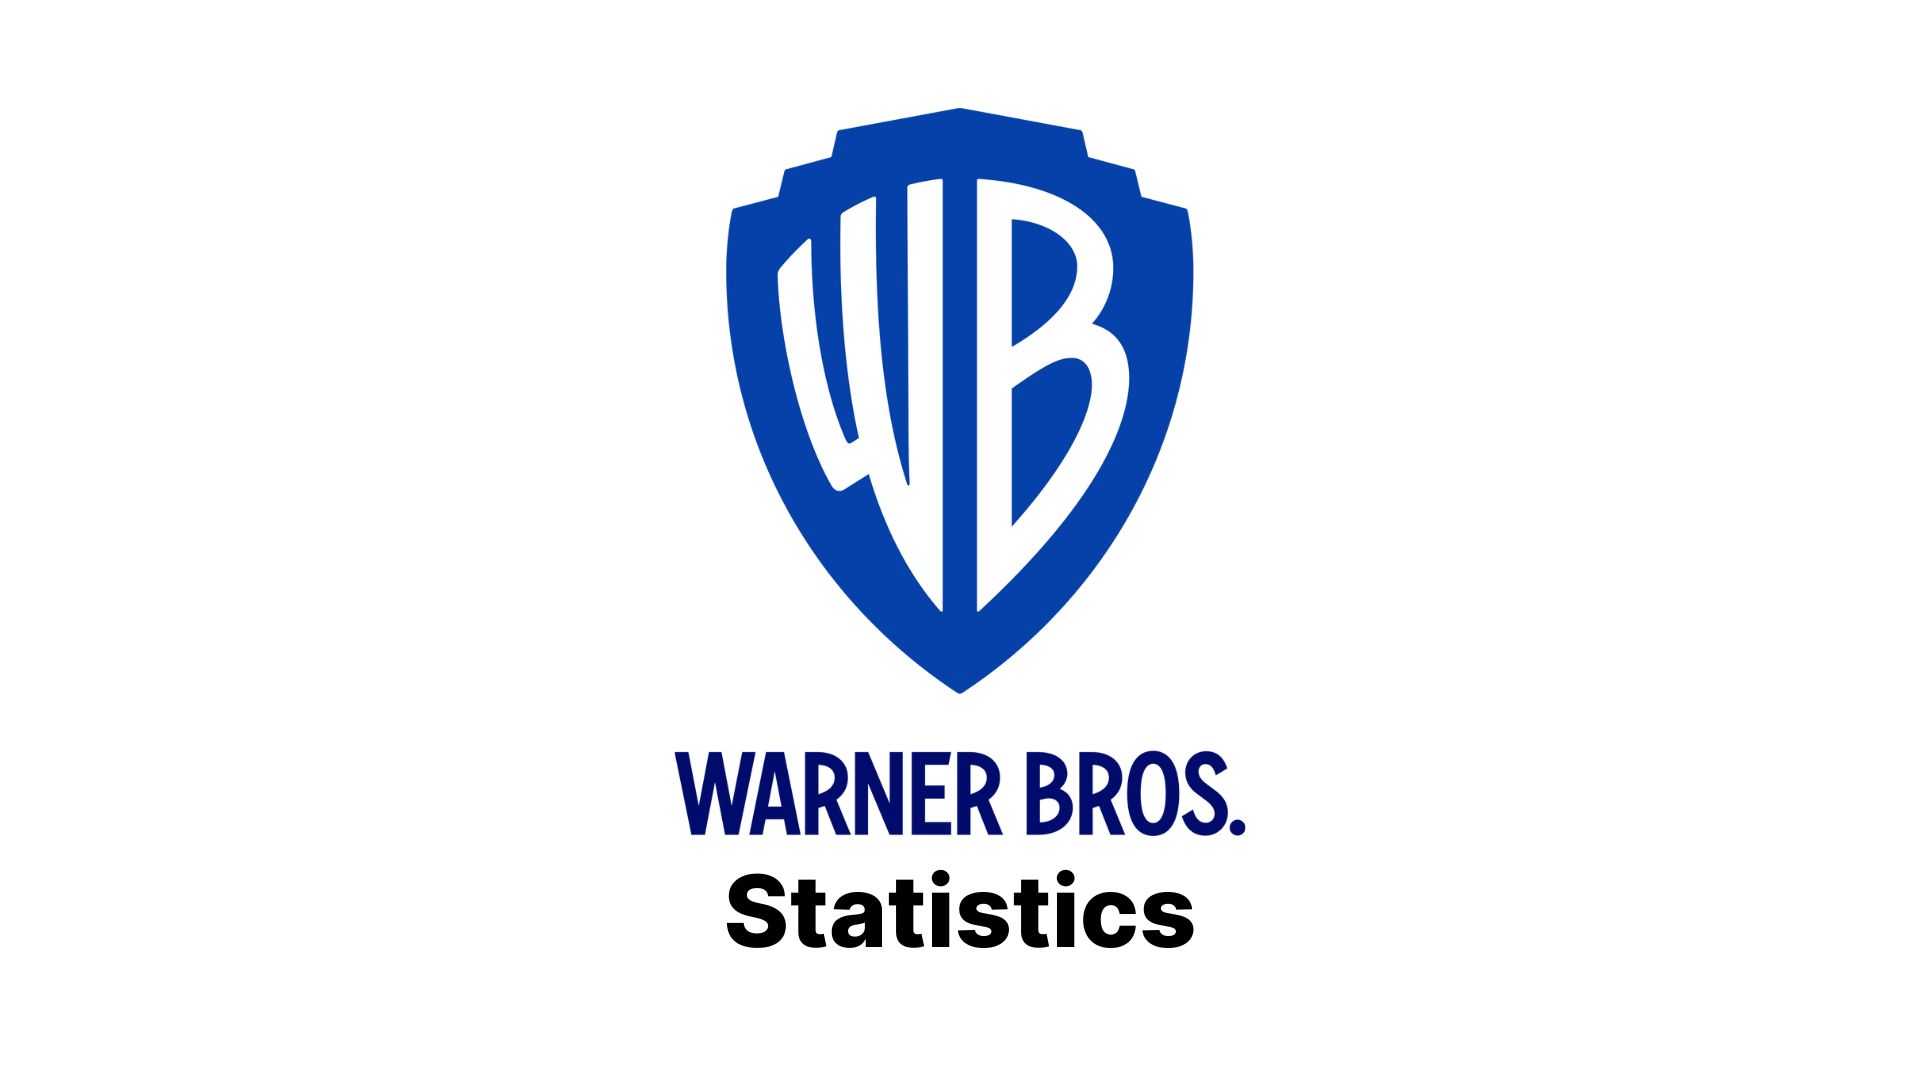 Warner Bros., American Masters